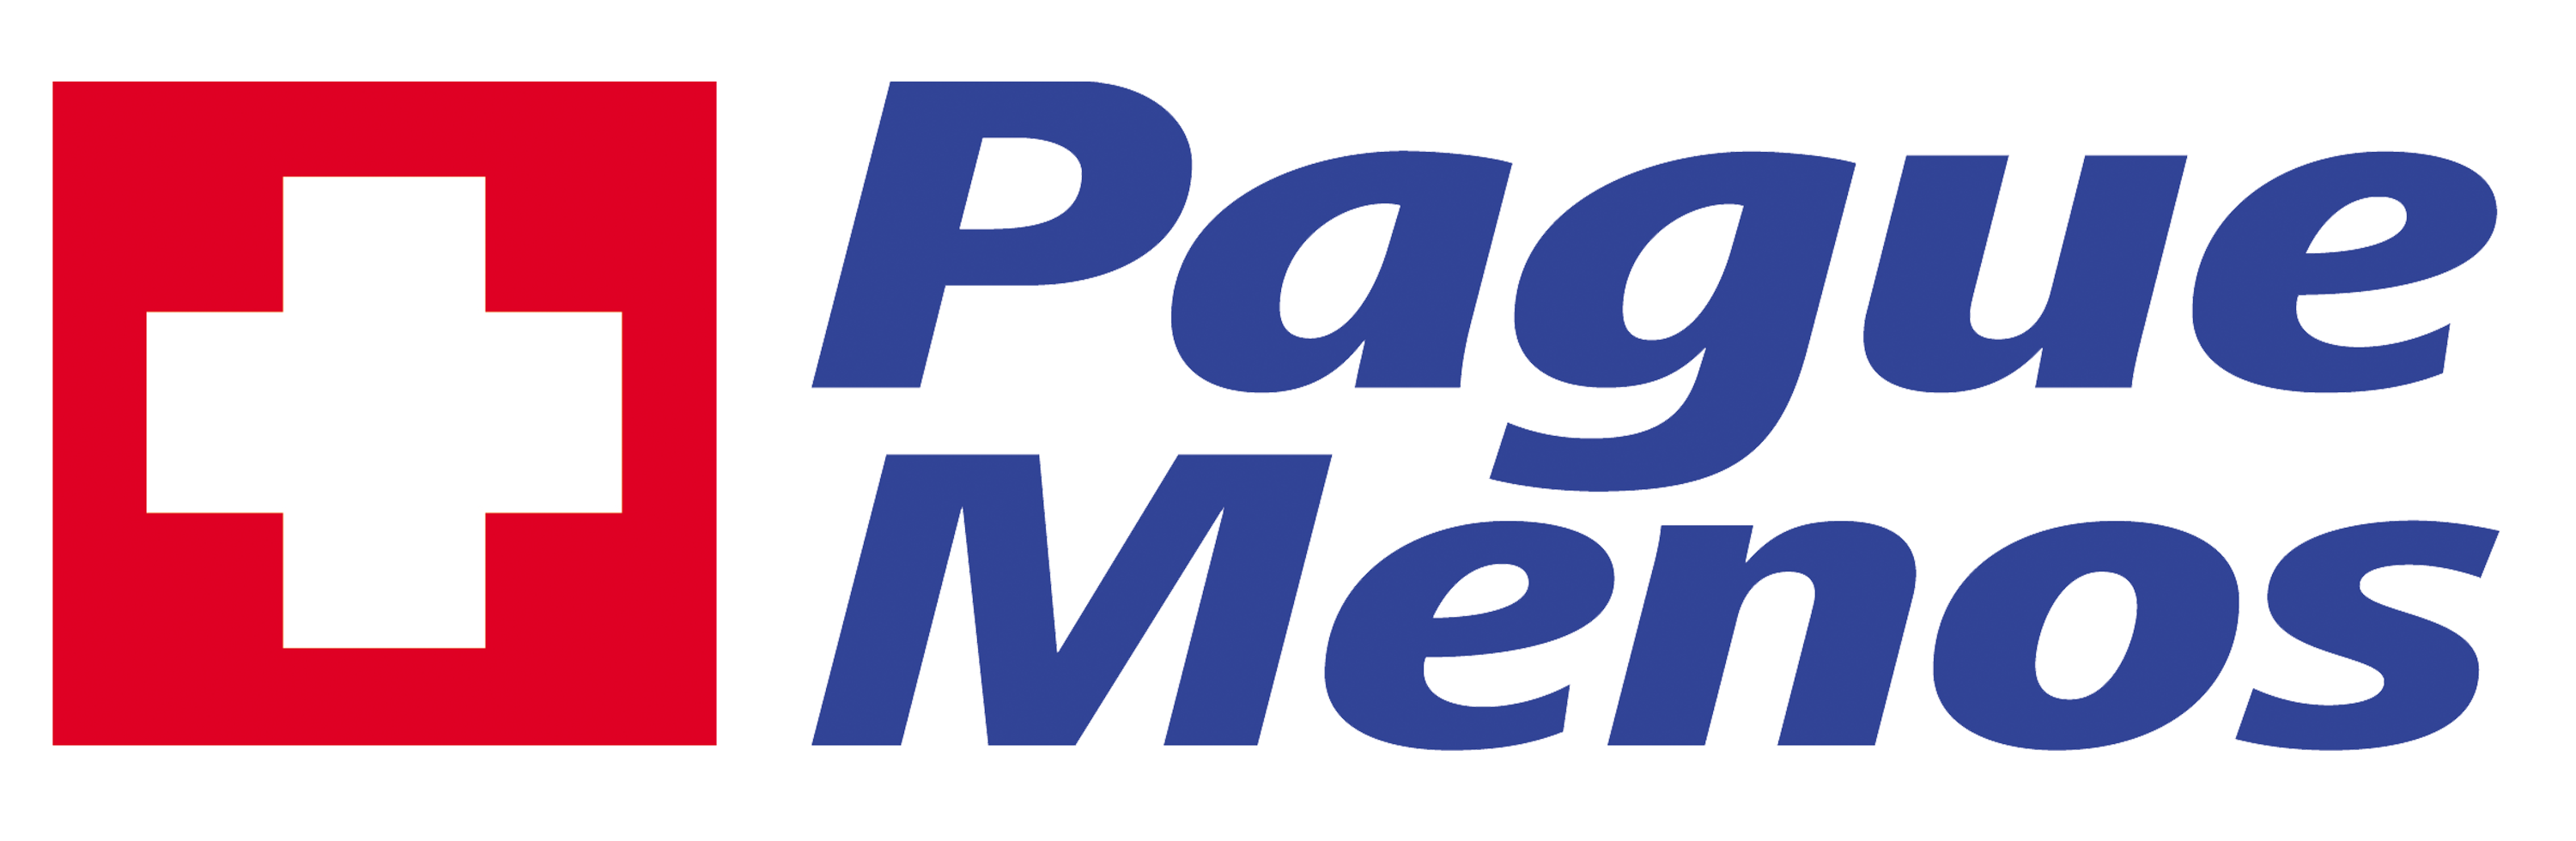 Farmacia Pague Menos-Itapoa BA